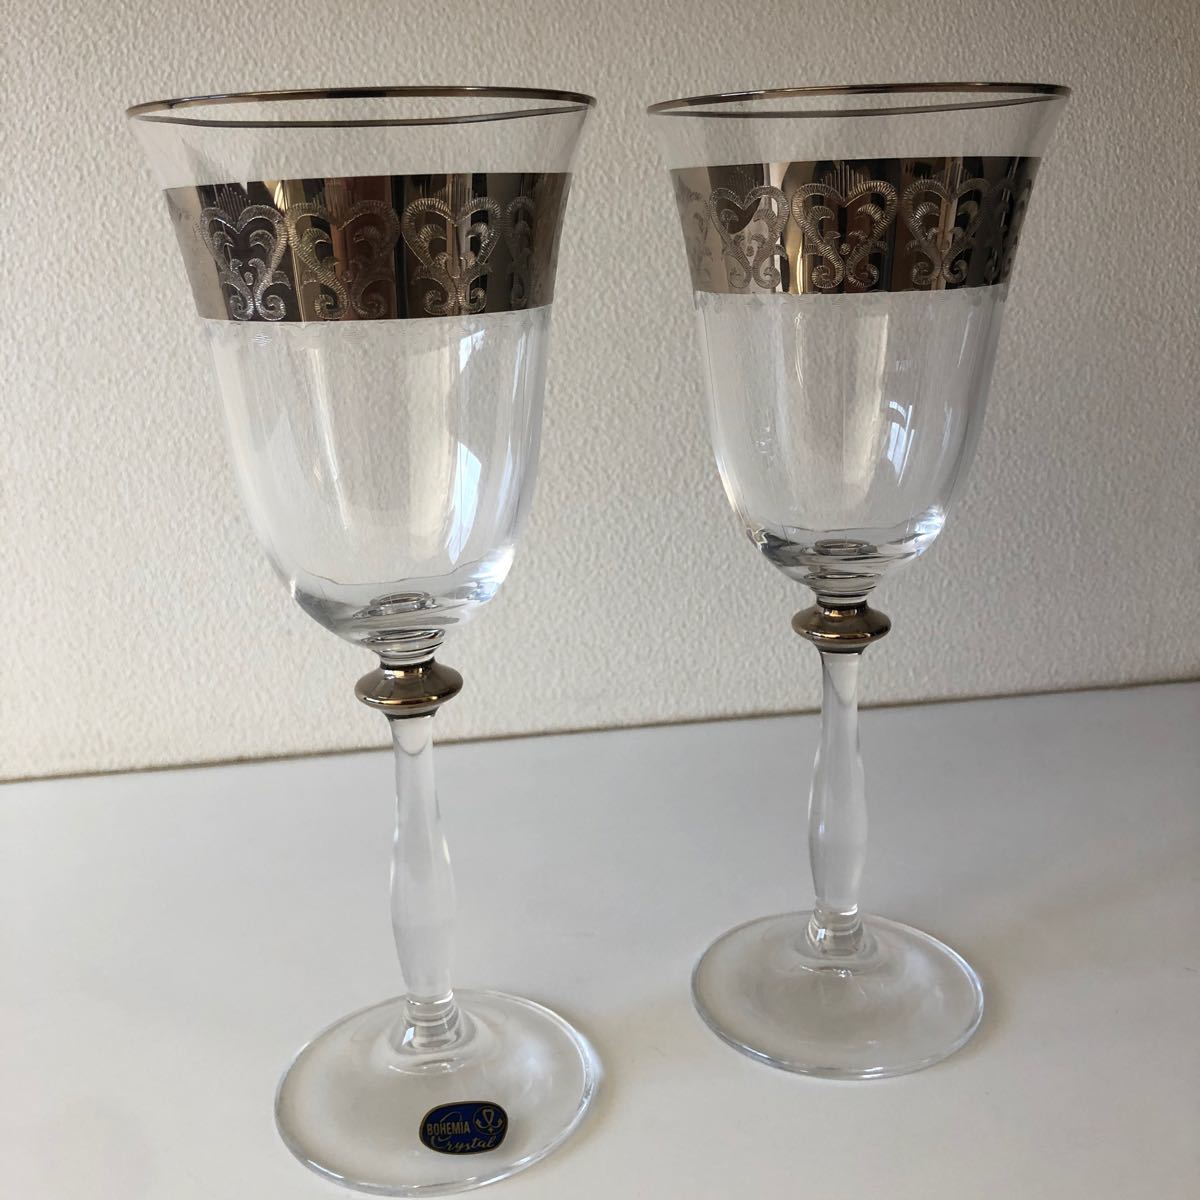 ボヘミアガラス クリスタル ワイングラス ペア シャンパングラス